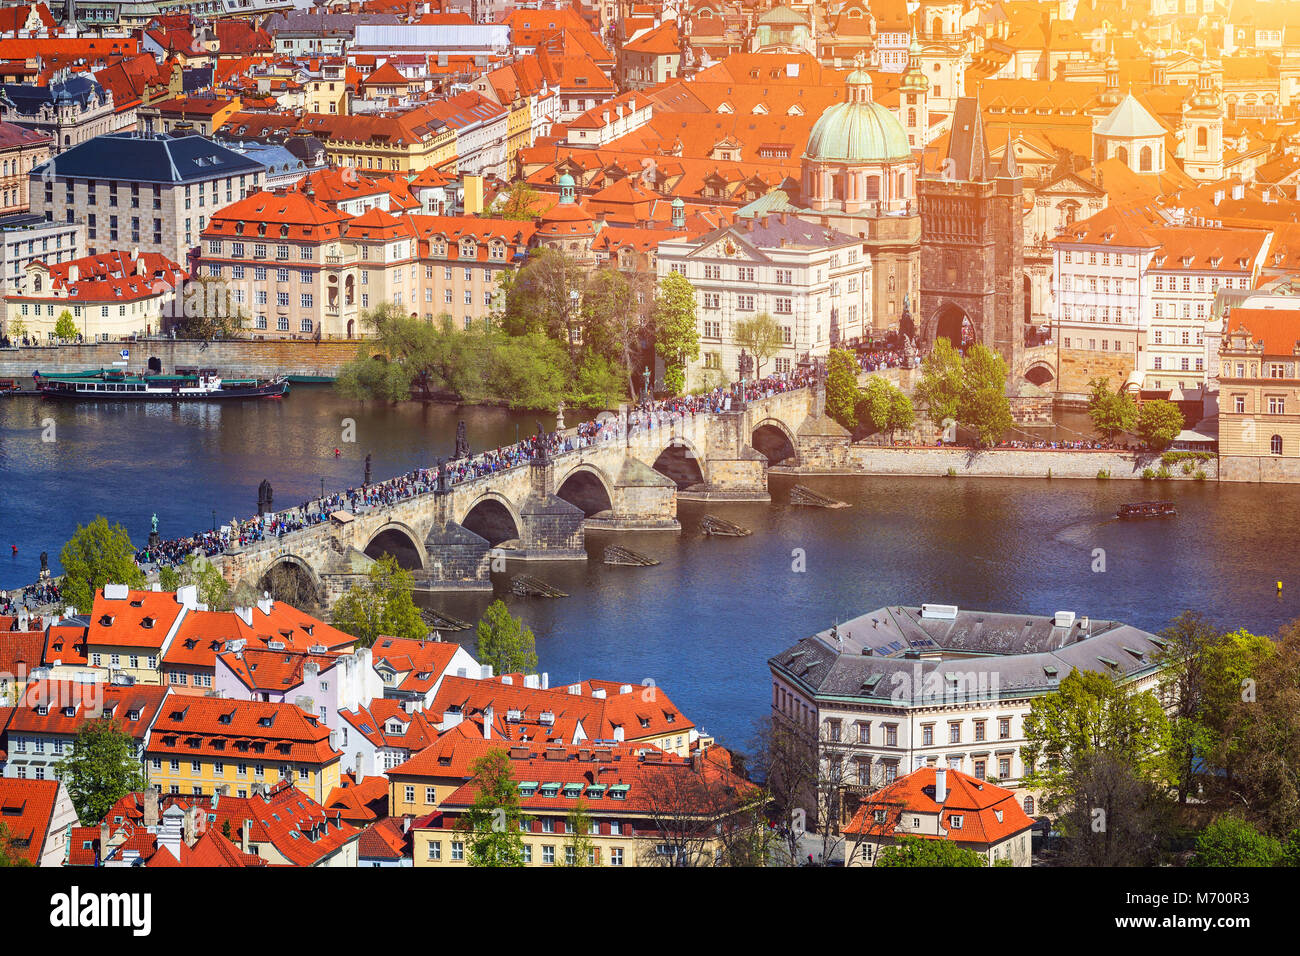 Vue panoramique de la vieille ville de Prague avec des toits. Prague, République Tchèque Banque D'Images